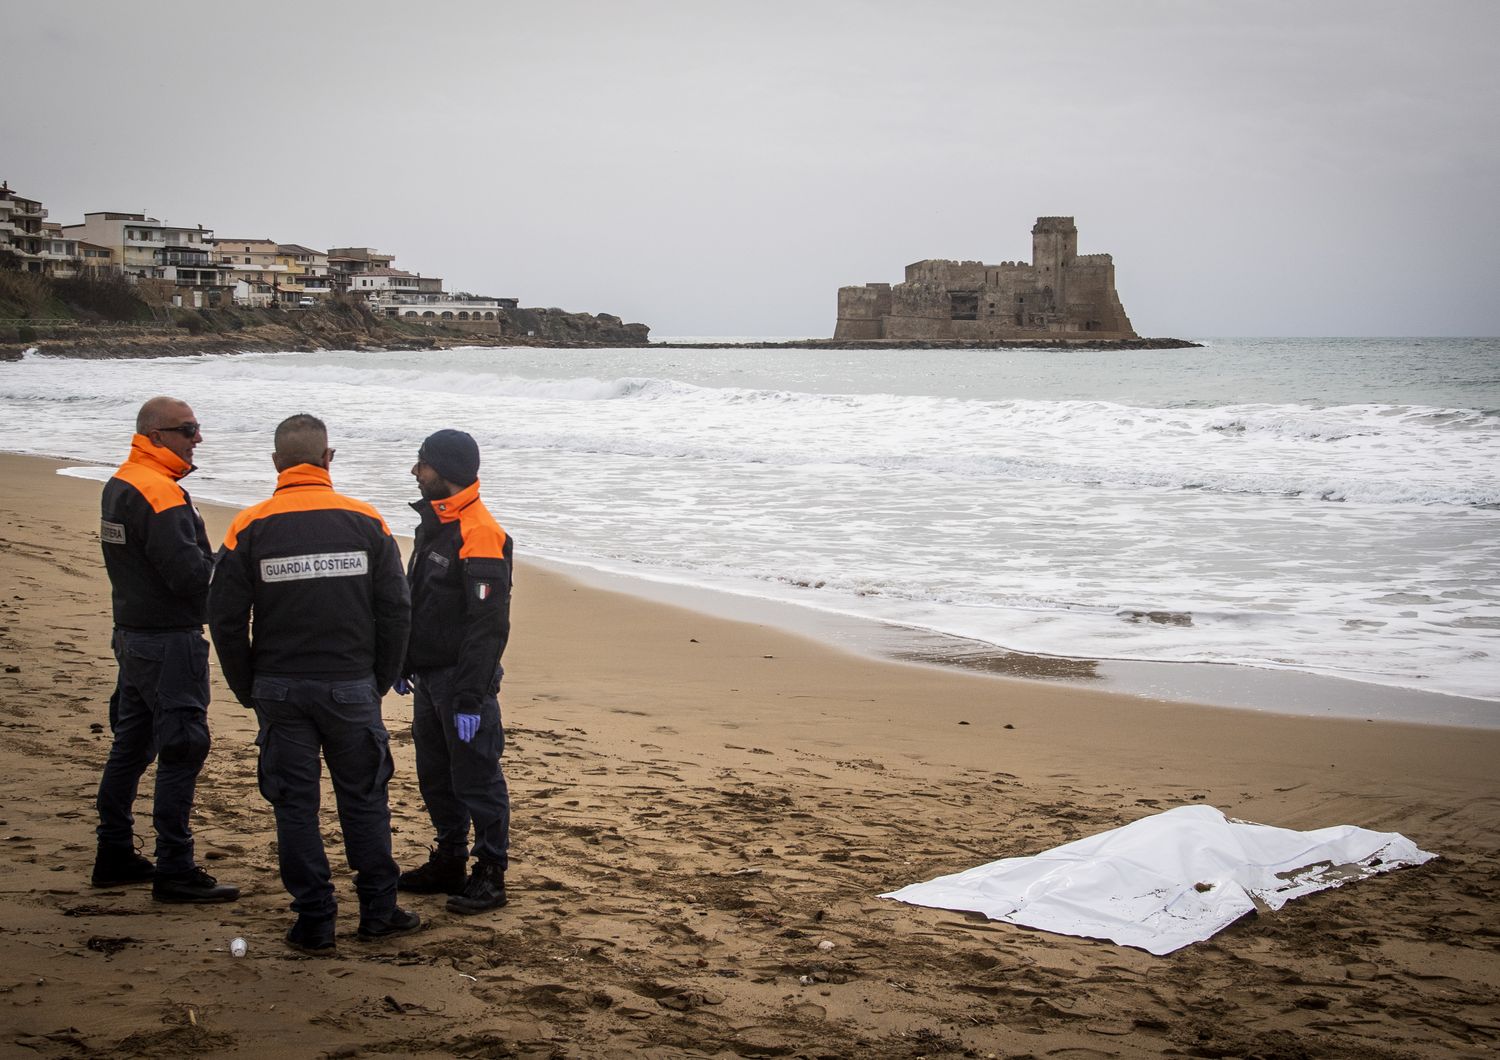 Migranti Ue combattere mafie per evitare nuove tragedie